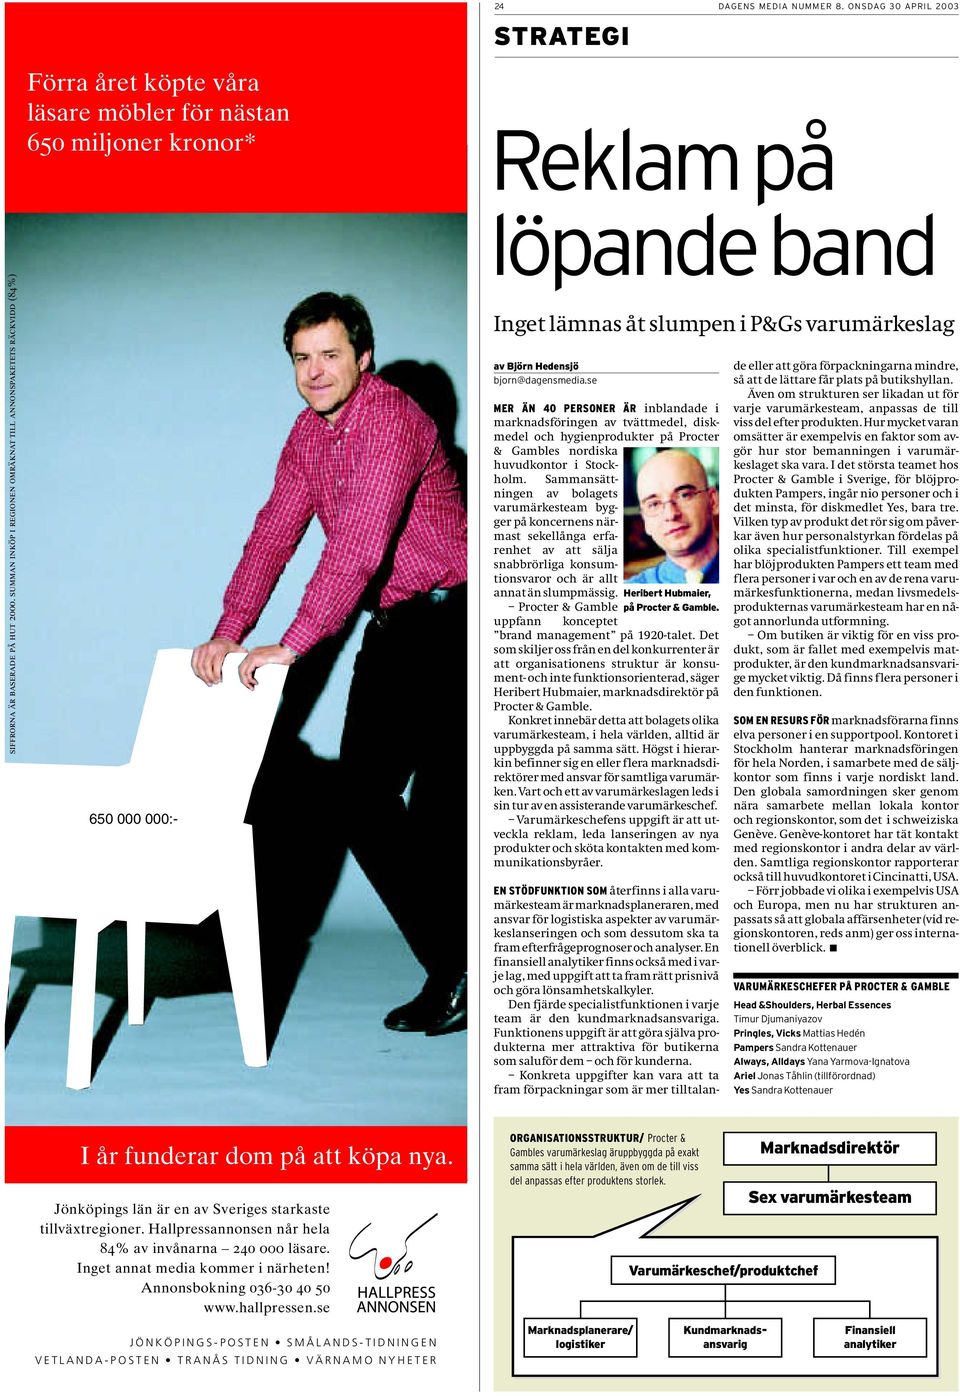 ONSDAG 30 APRIL 2003 STRATEGI Reklam på löpande band Inget lämnas åt slumpen i P&Gs varumärkeslag av Björn Hedensjö bjorn@dagensmedia.